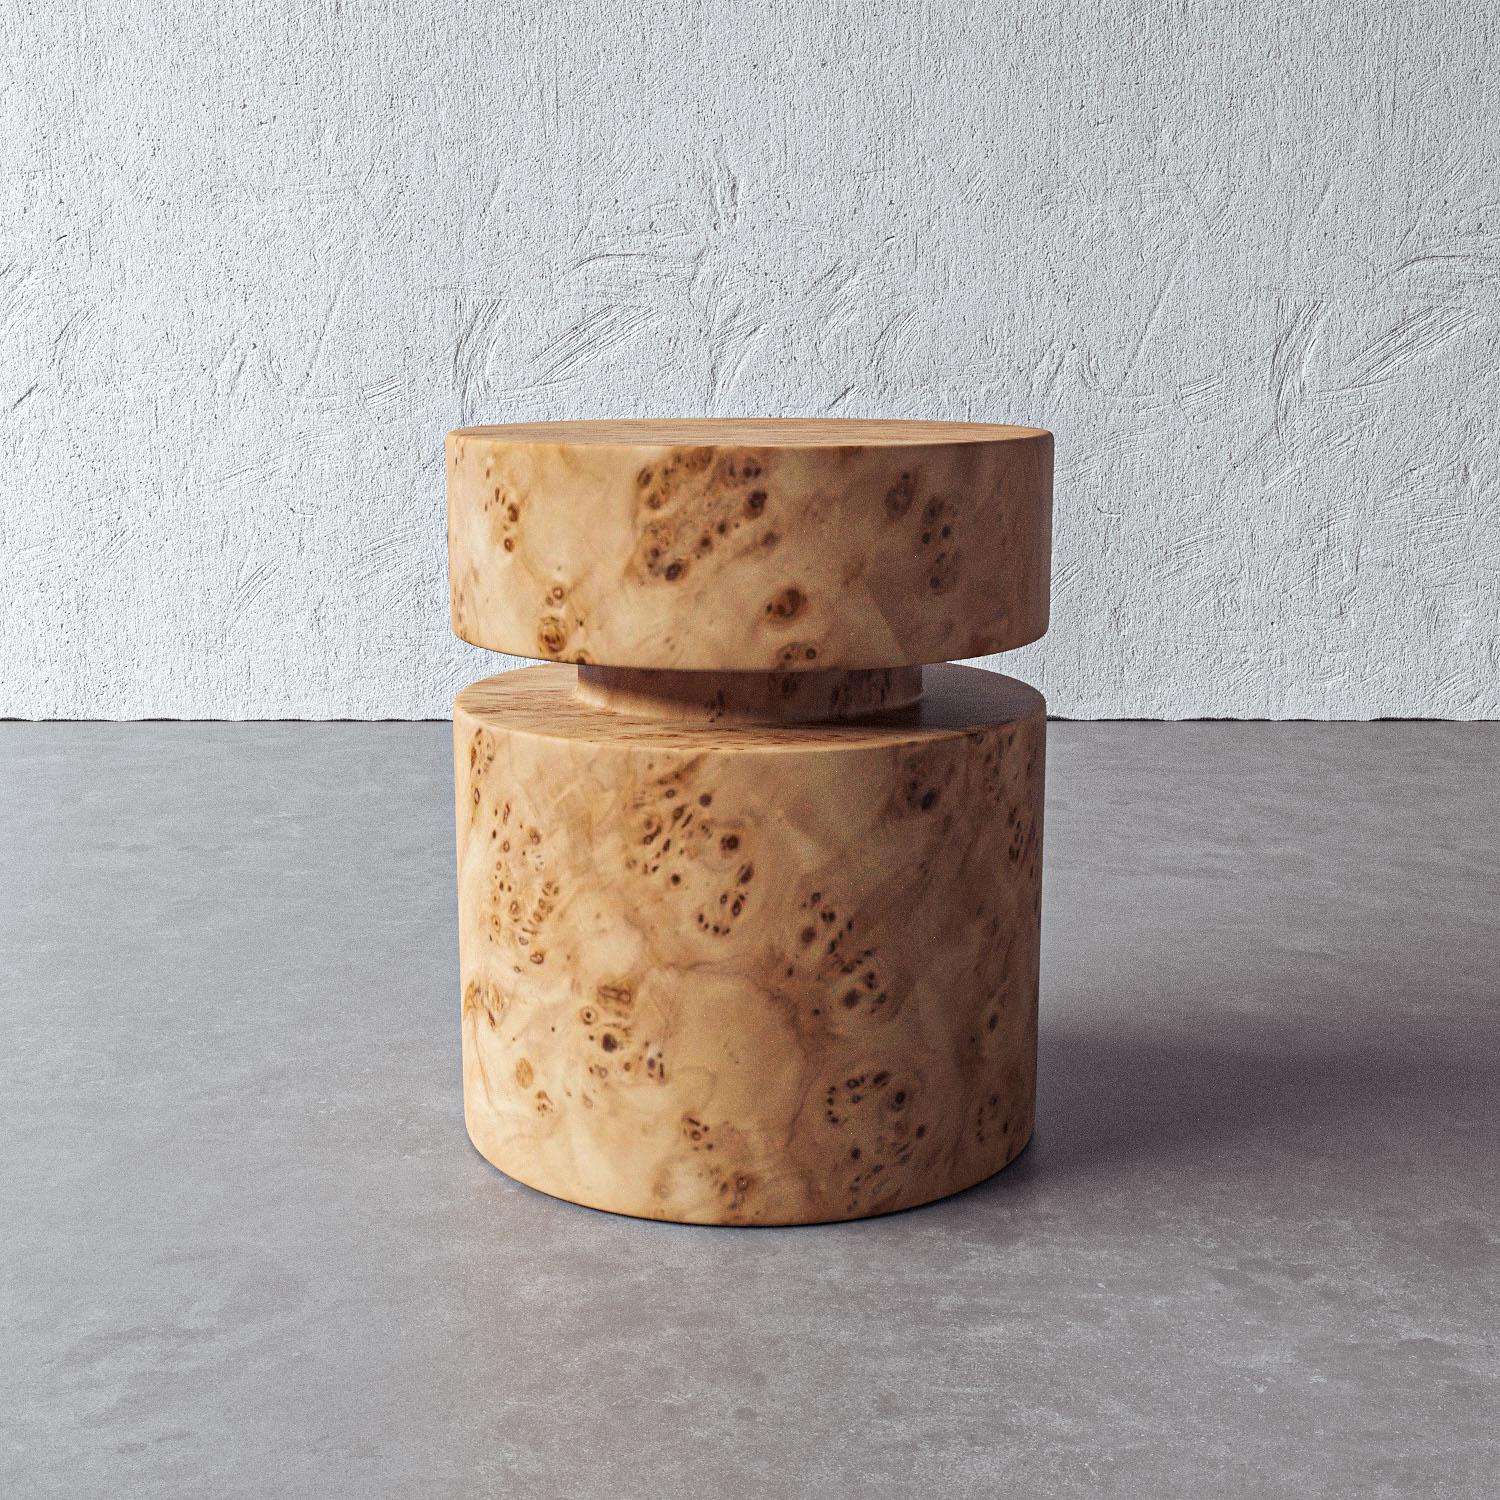 La forme cylindrique simple de cette table d'appoint met en valeur le bois naturel de ronce de Mappa pour créer un accent sculptural et fonctionnel dans n'importe quelle pièce. Fabriquée à la main par des artisans au Vietnam, cette pièce complète